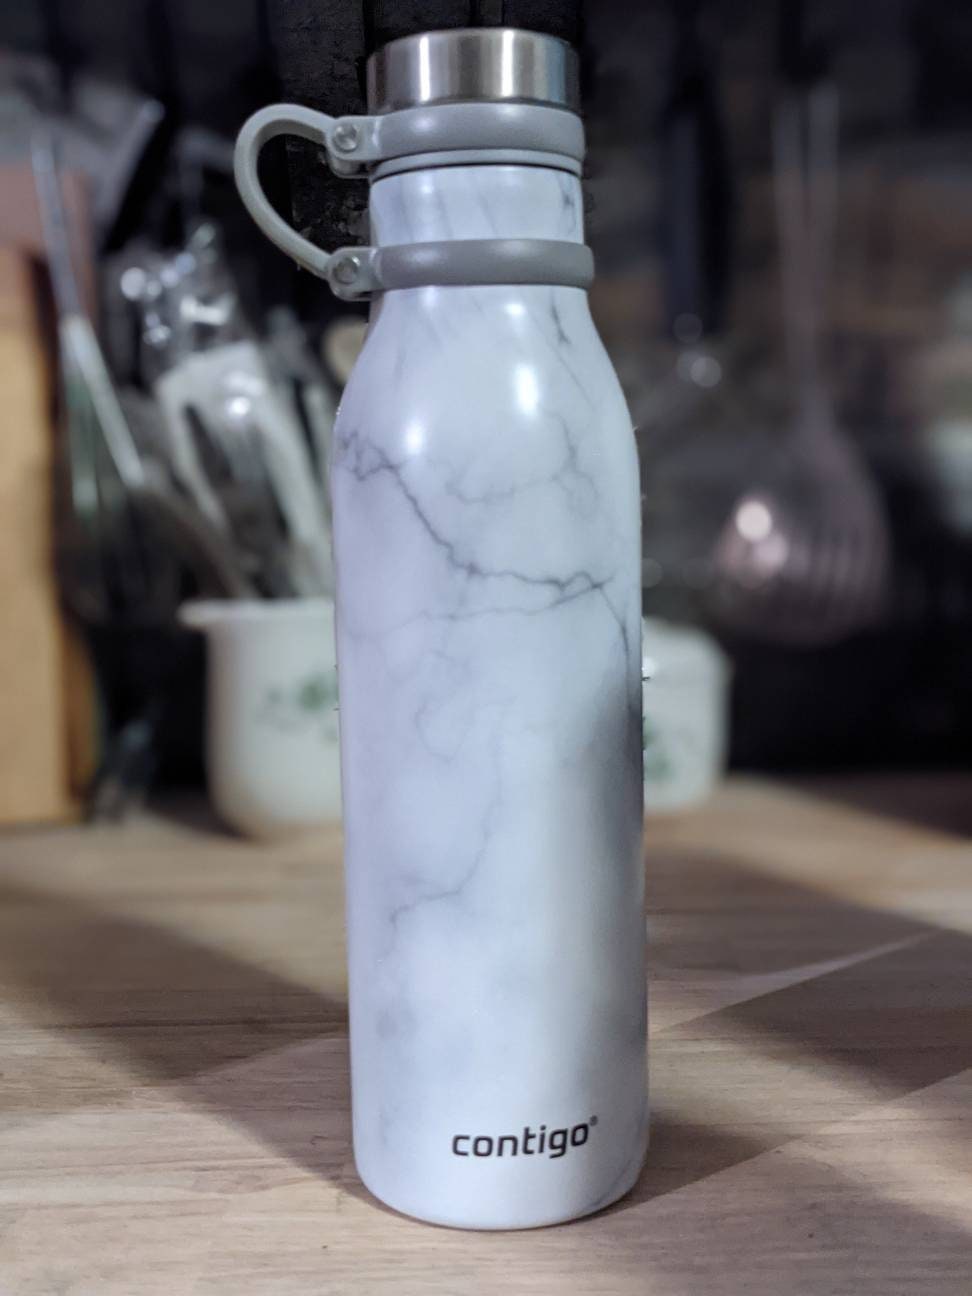 Contigo 20 oz. Matterhorn Couture Insulated Water Bottle - Merlot Airbrush